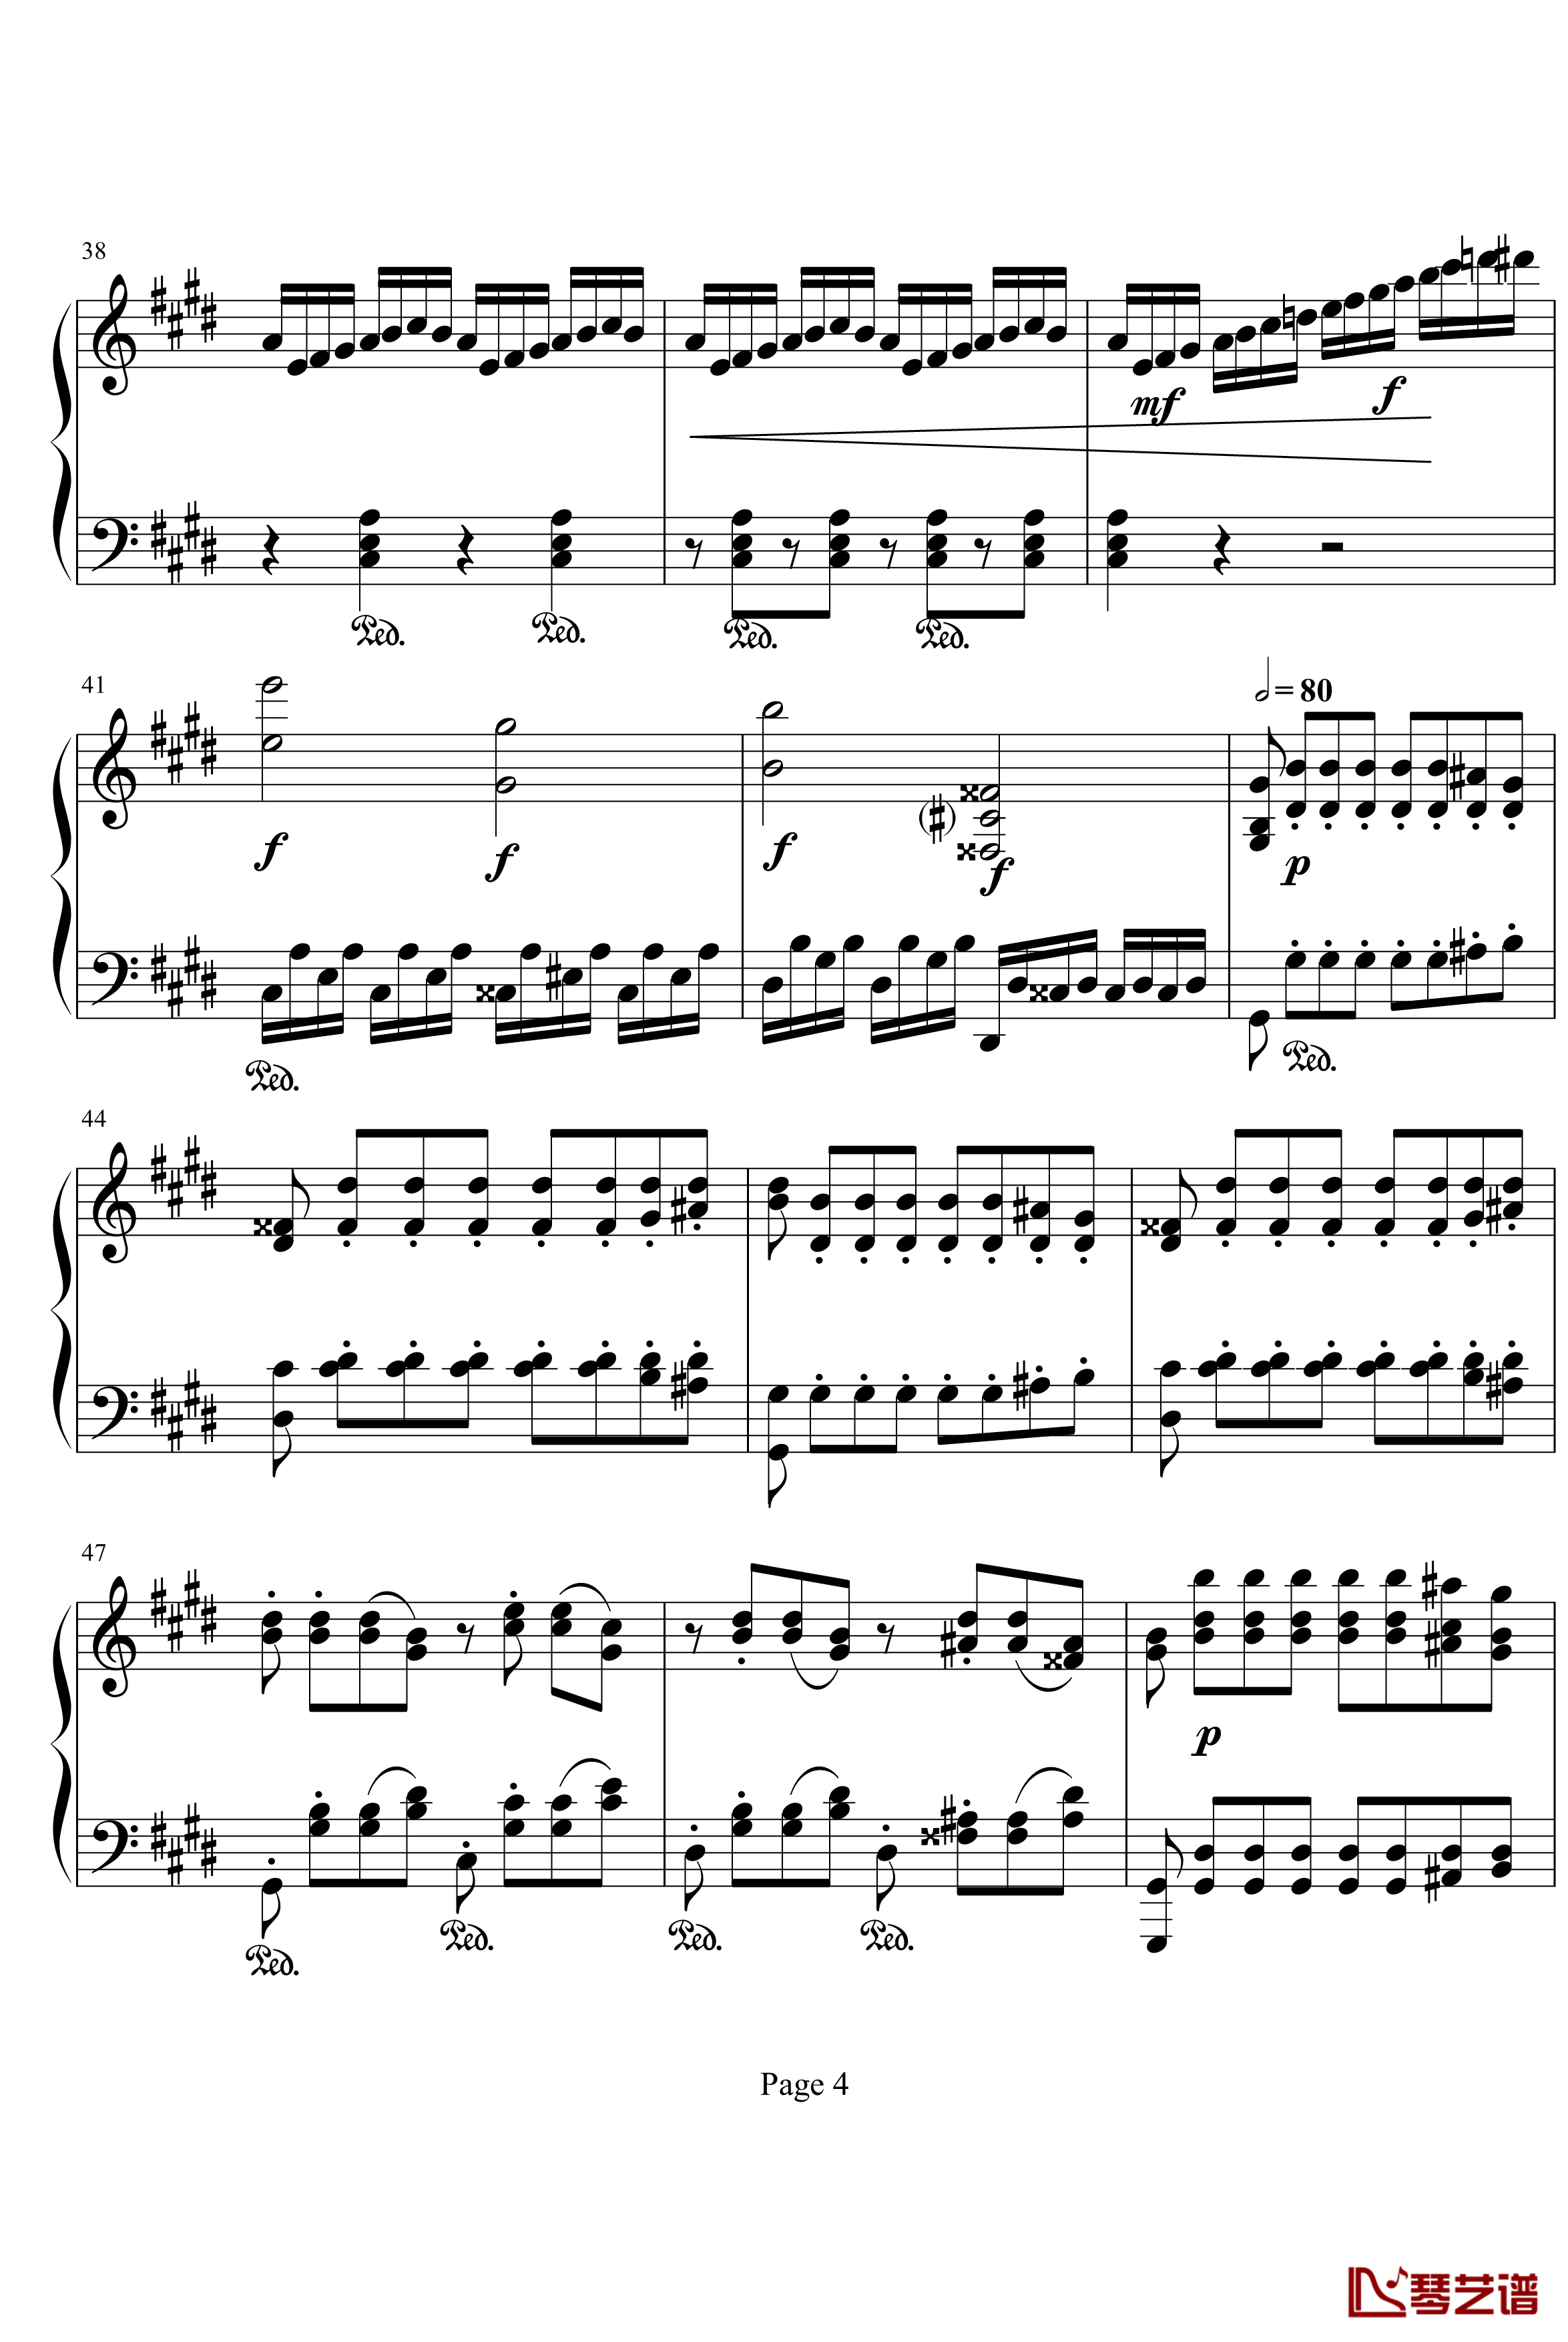 月光奏明曲钢琴谱-作品27之2-贝多芬-beethoven4